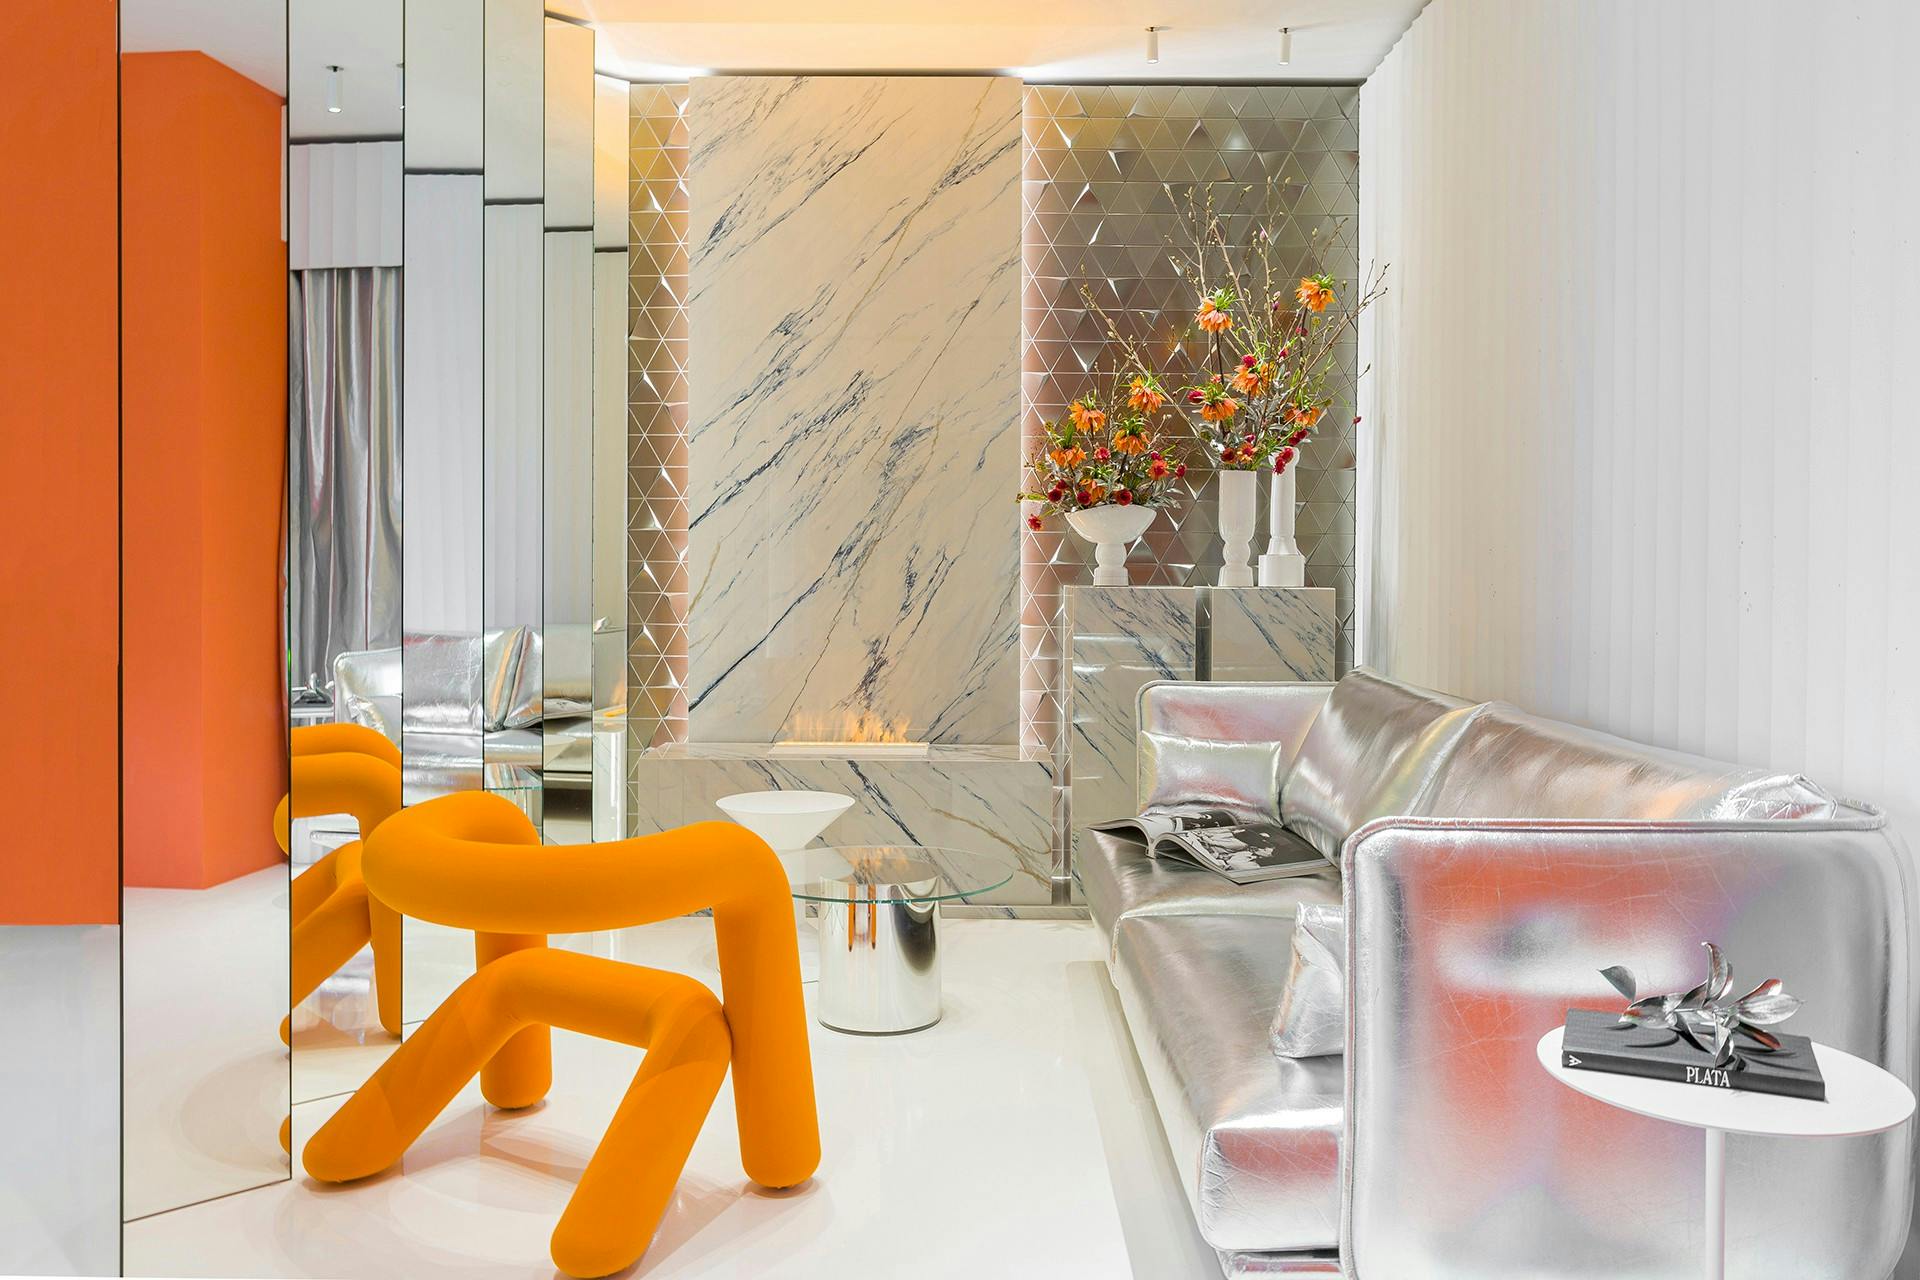 Image of 22. casa decor 2022 espacio sinmas studio salon Bajas1.jpg?auto=format%2Ccompress&ixlib=php 3.3 in Metamorphic, Tom Dixon’s sculptural bathroom featuring Dekton Pietra Kode - Cosentino